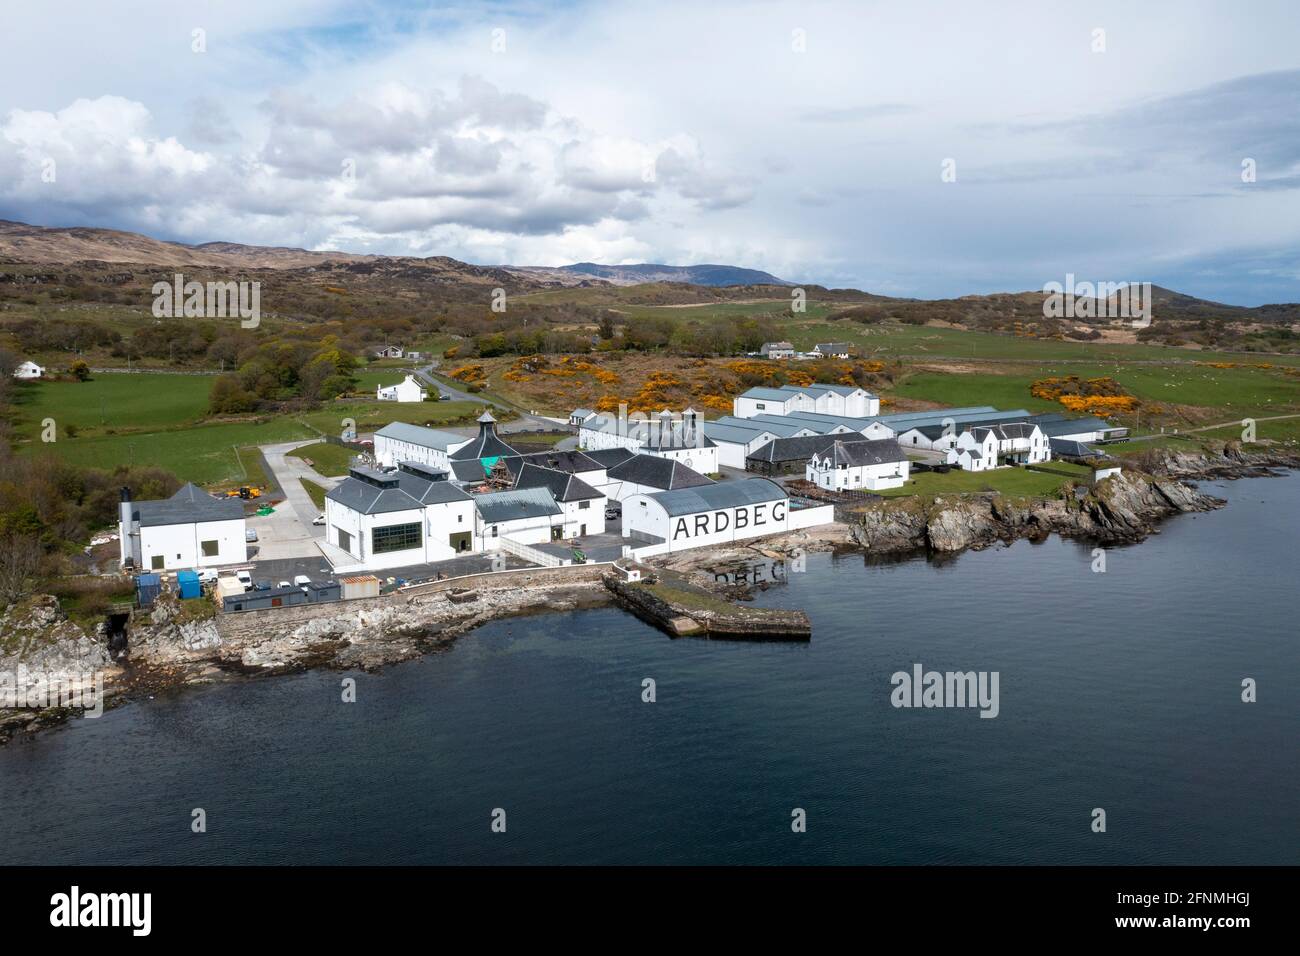 Vista aerea della distilleria Ardbeg, Islay, la distilleria è di proprietà di Louis Vuitton Moët Hennessy, e produce un whisky Islay pesantemente pesantemente pesato. Foto Stock